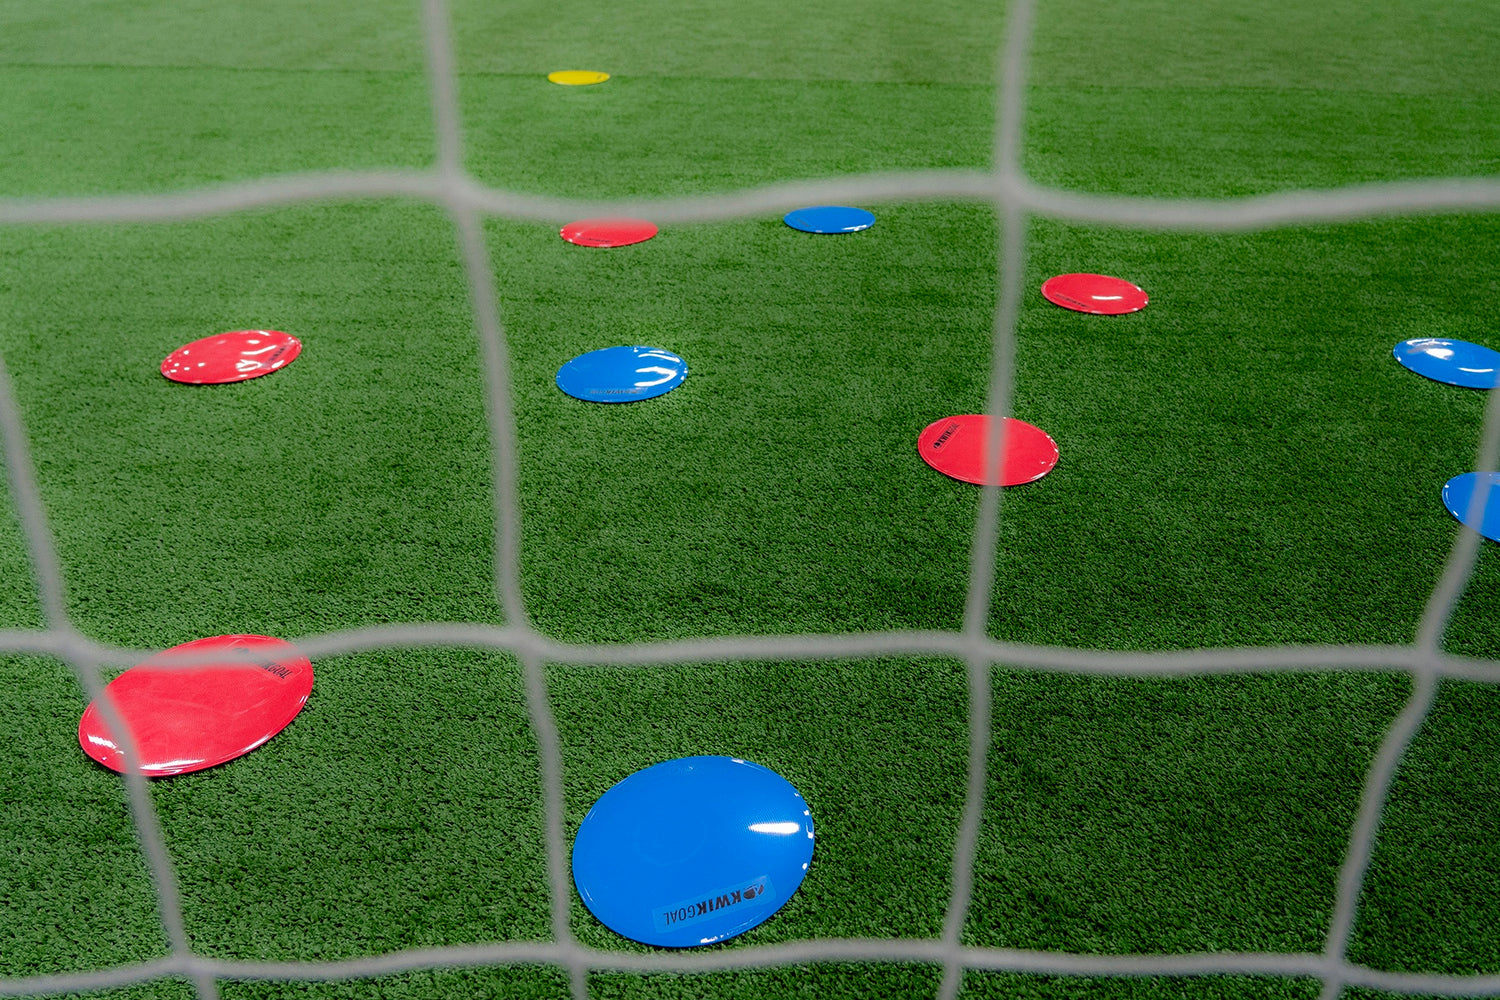 Kwik Goal Flat Round Markers (On field 1)